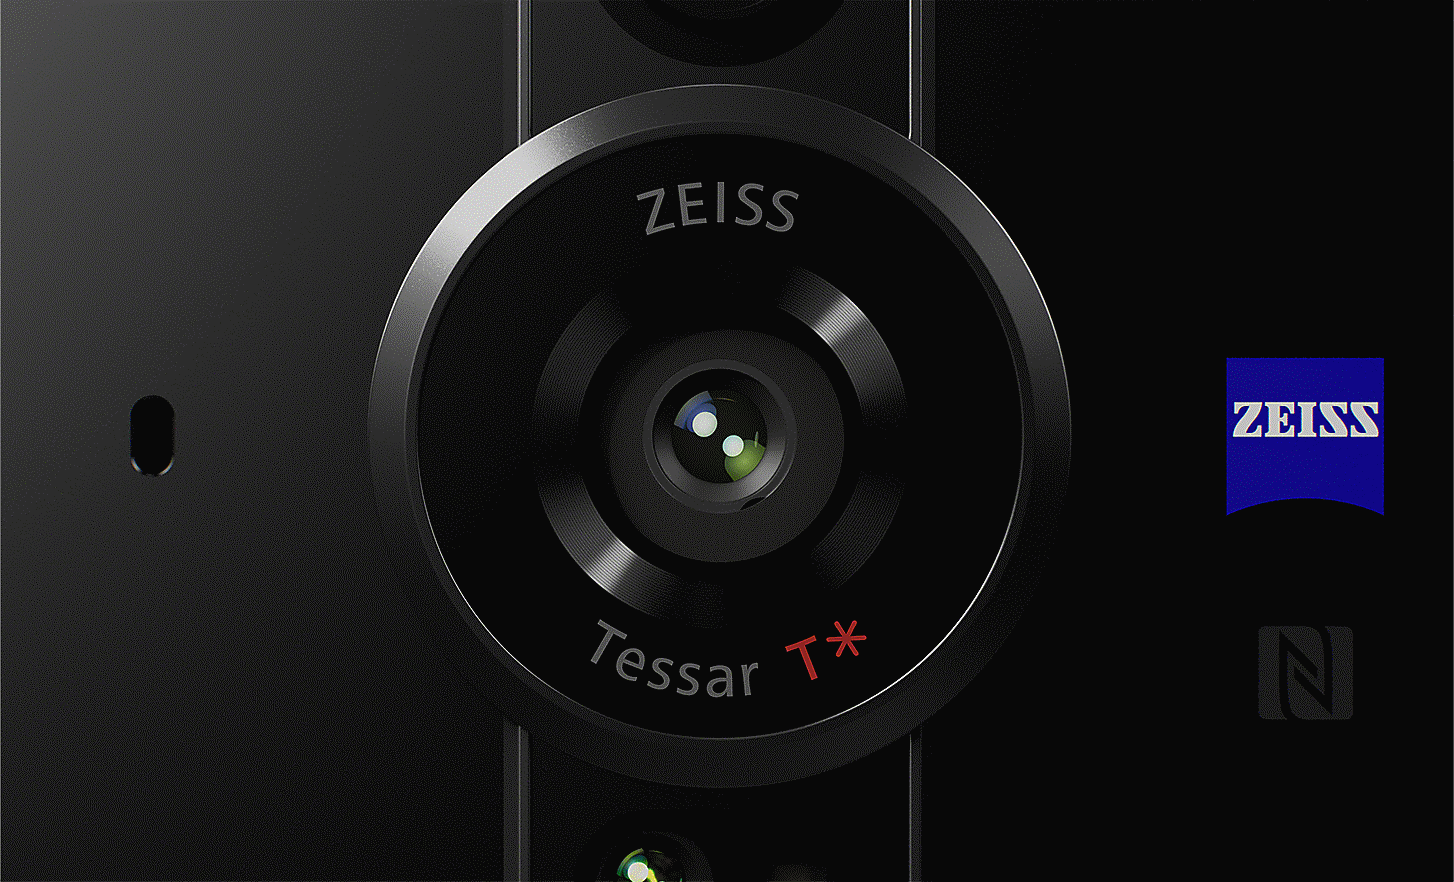 ZEISS Tessar T* 鏡頭特寫，並顯示 ZEISS 標誌